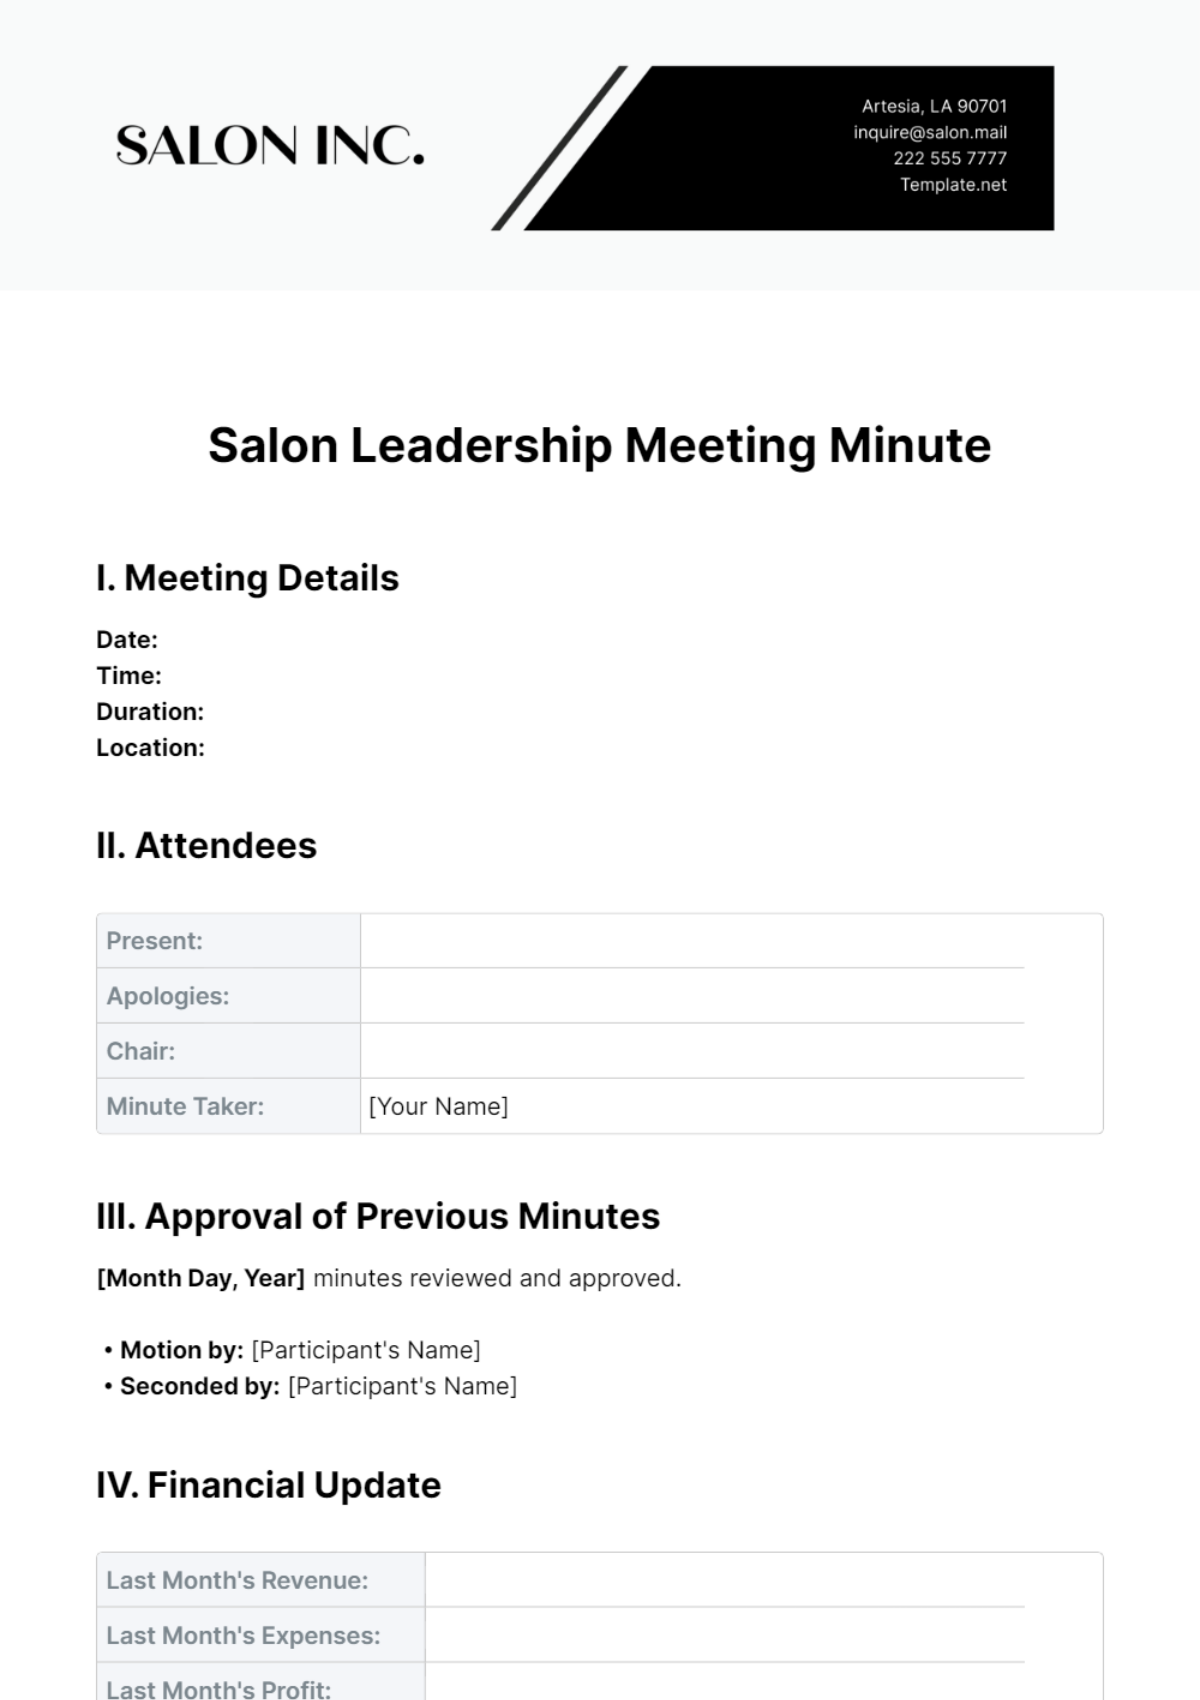 Free Salon Leadership Meeting Minute Template